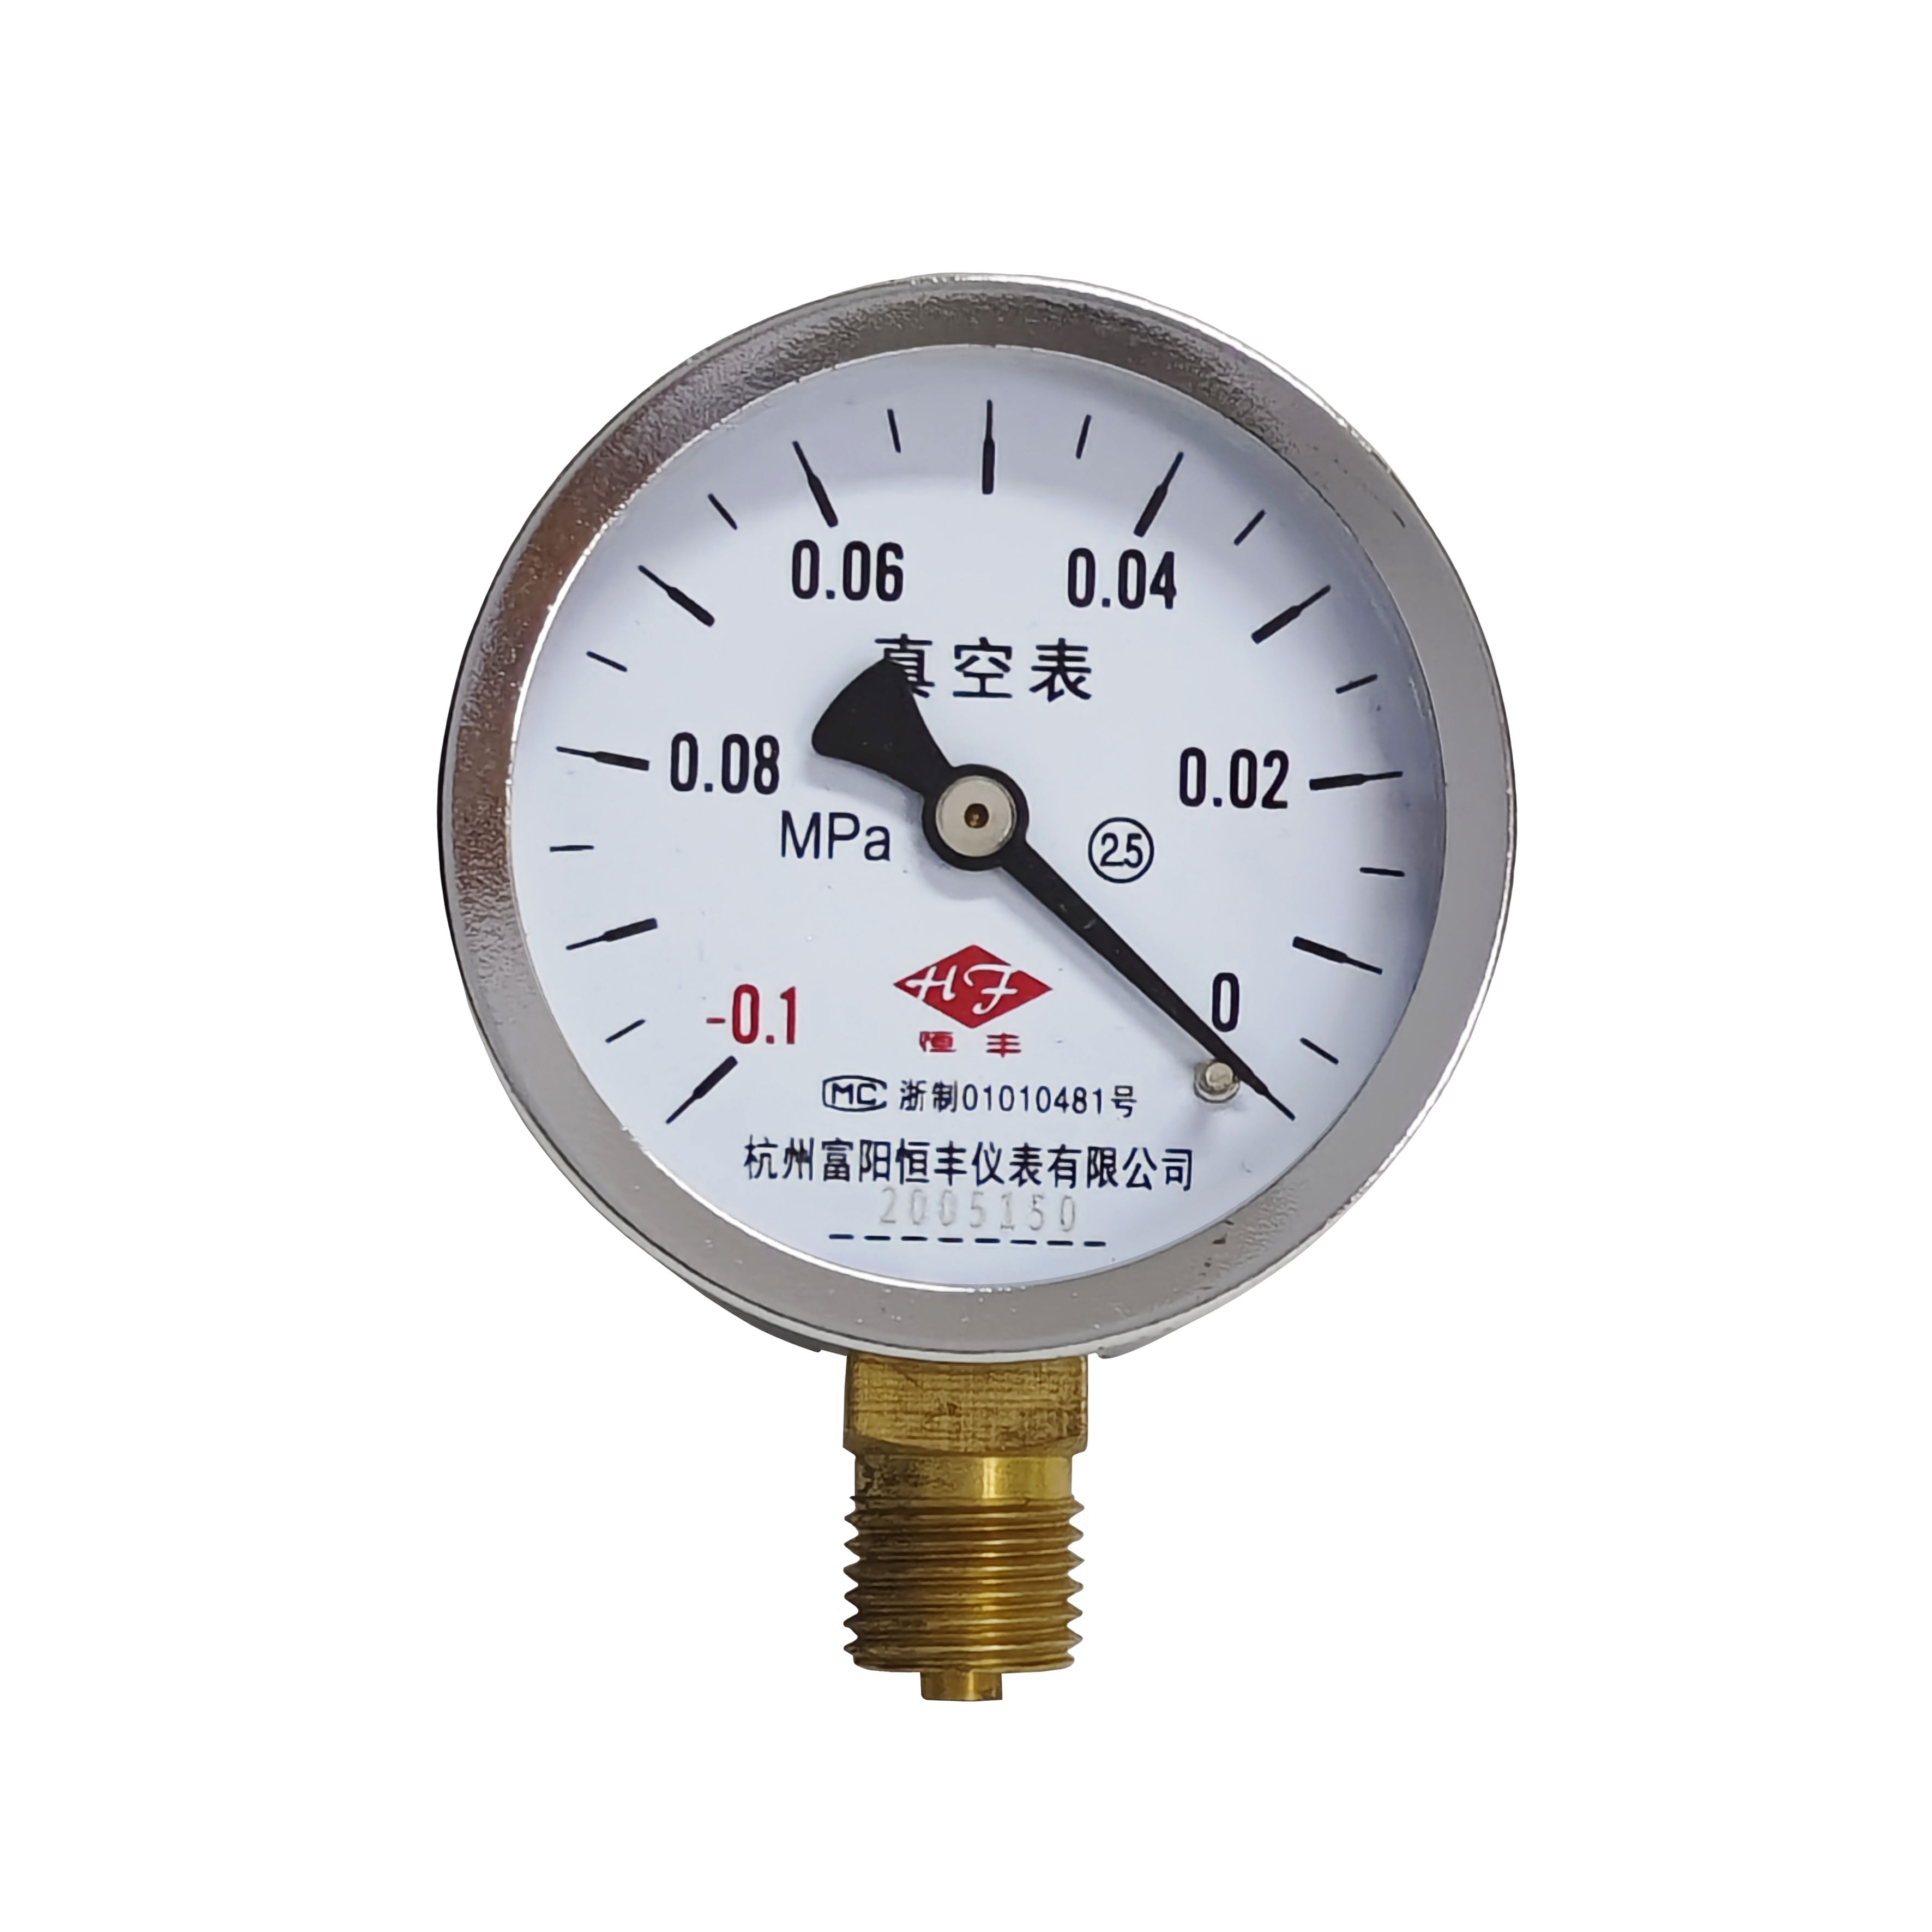 Y60 ordinary pressure gauge